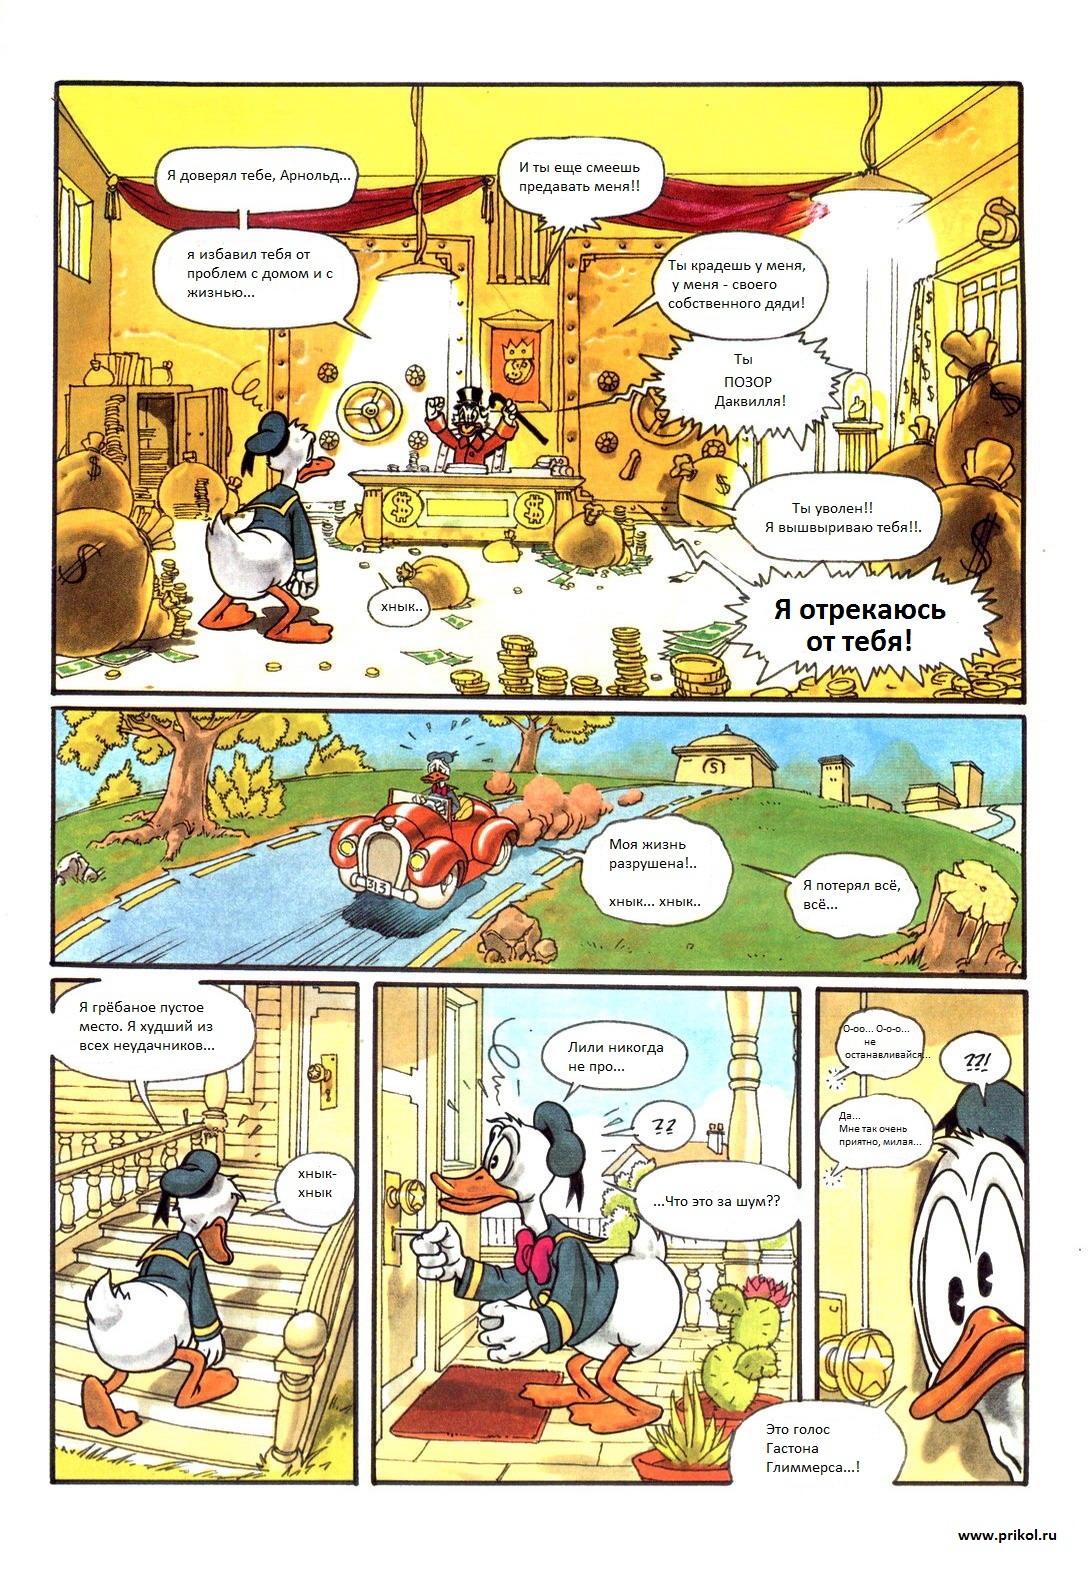 duck-tales-comics-06